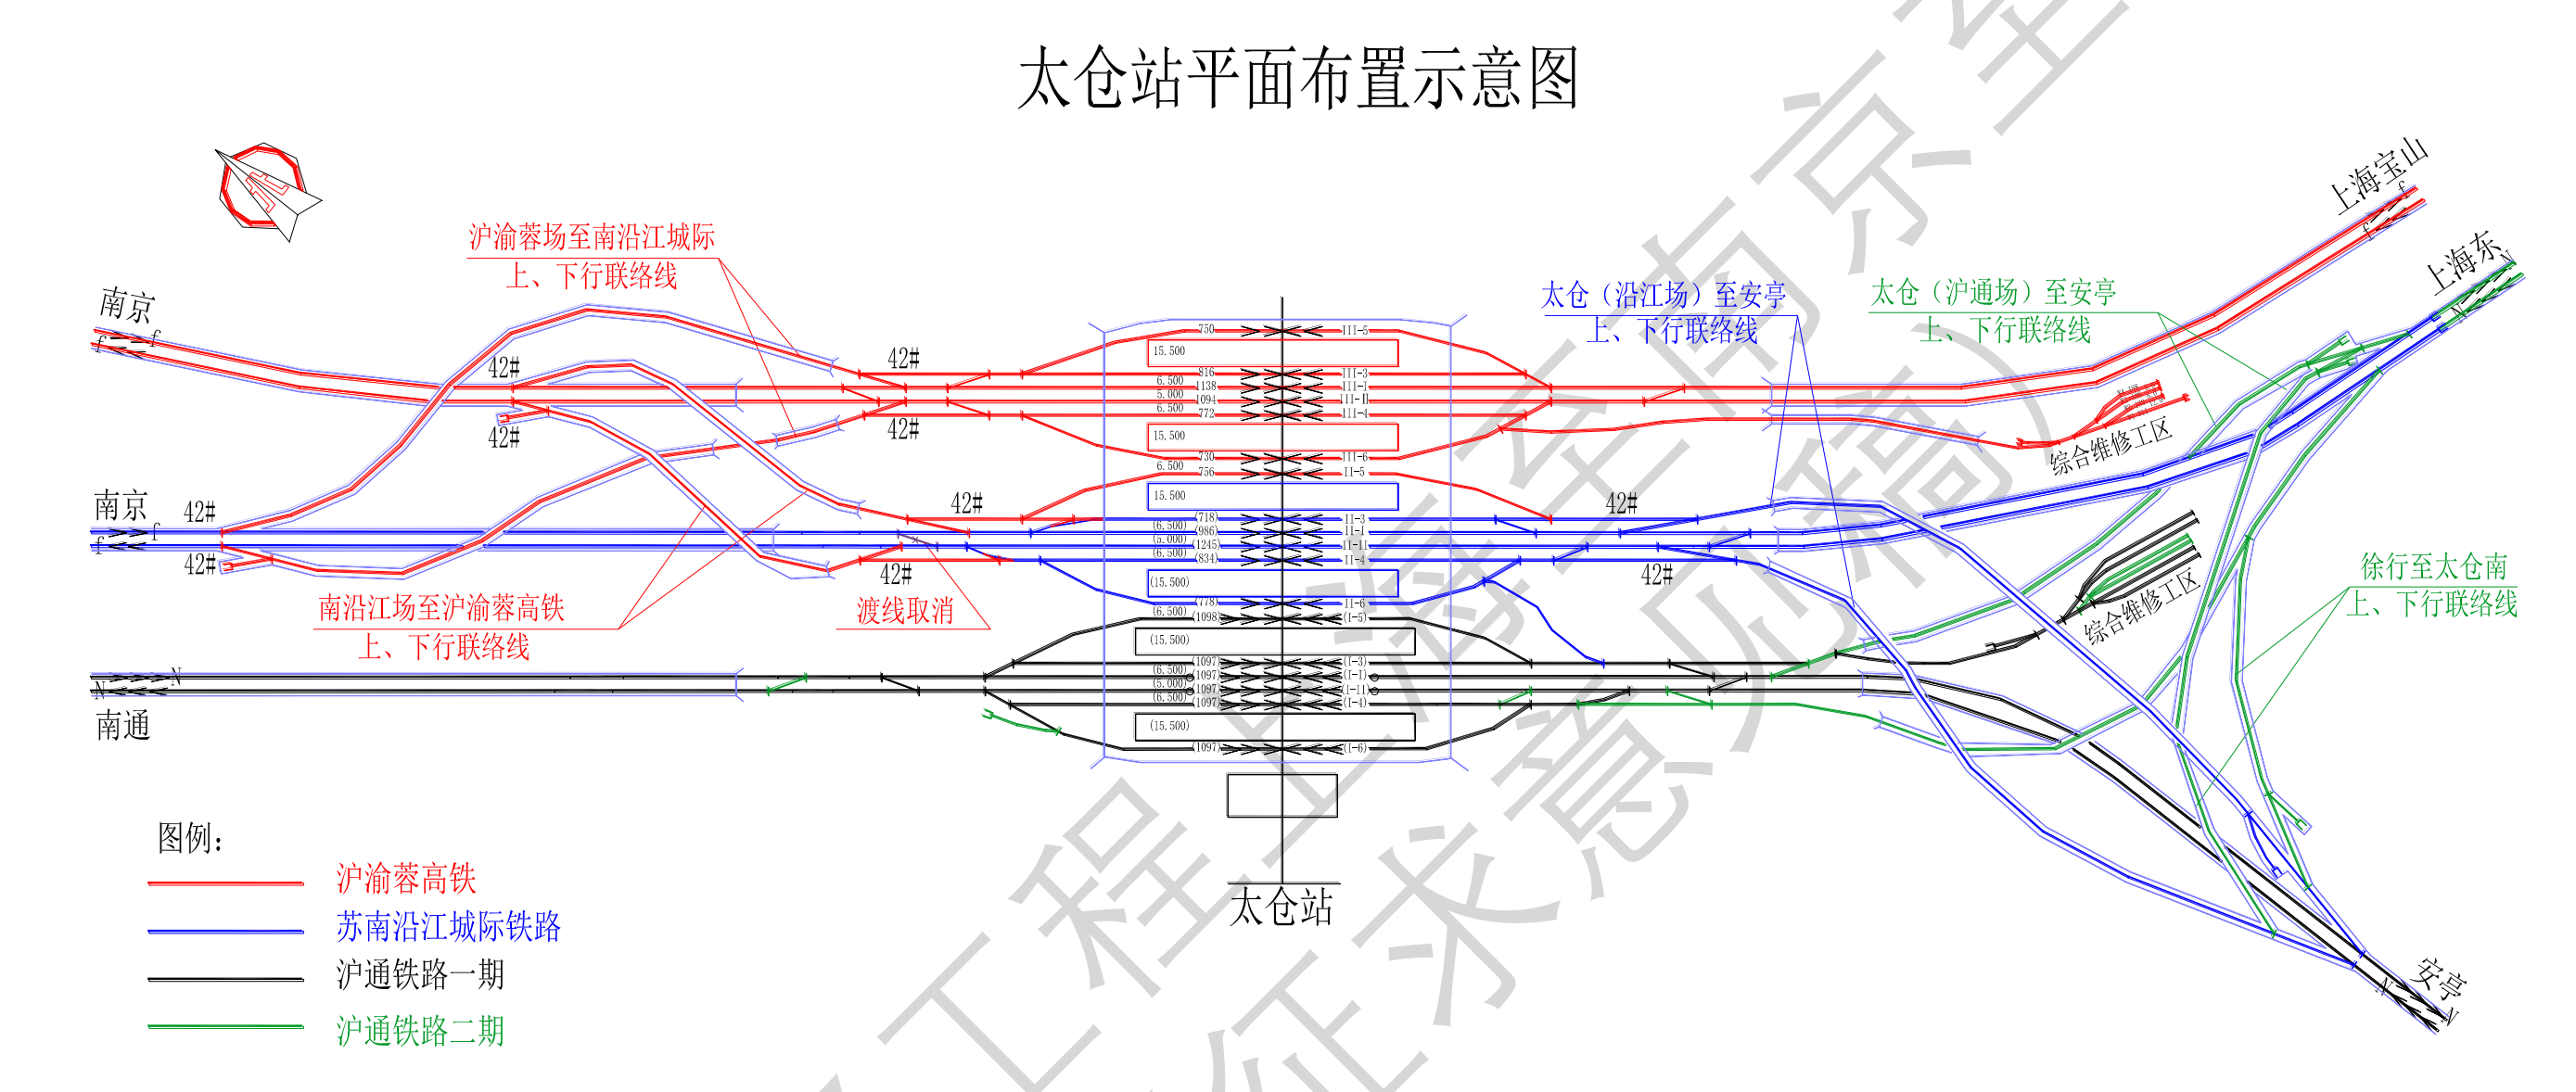 上海市动车组运行线路示意图2022年5月版